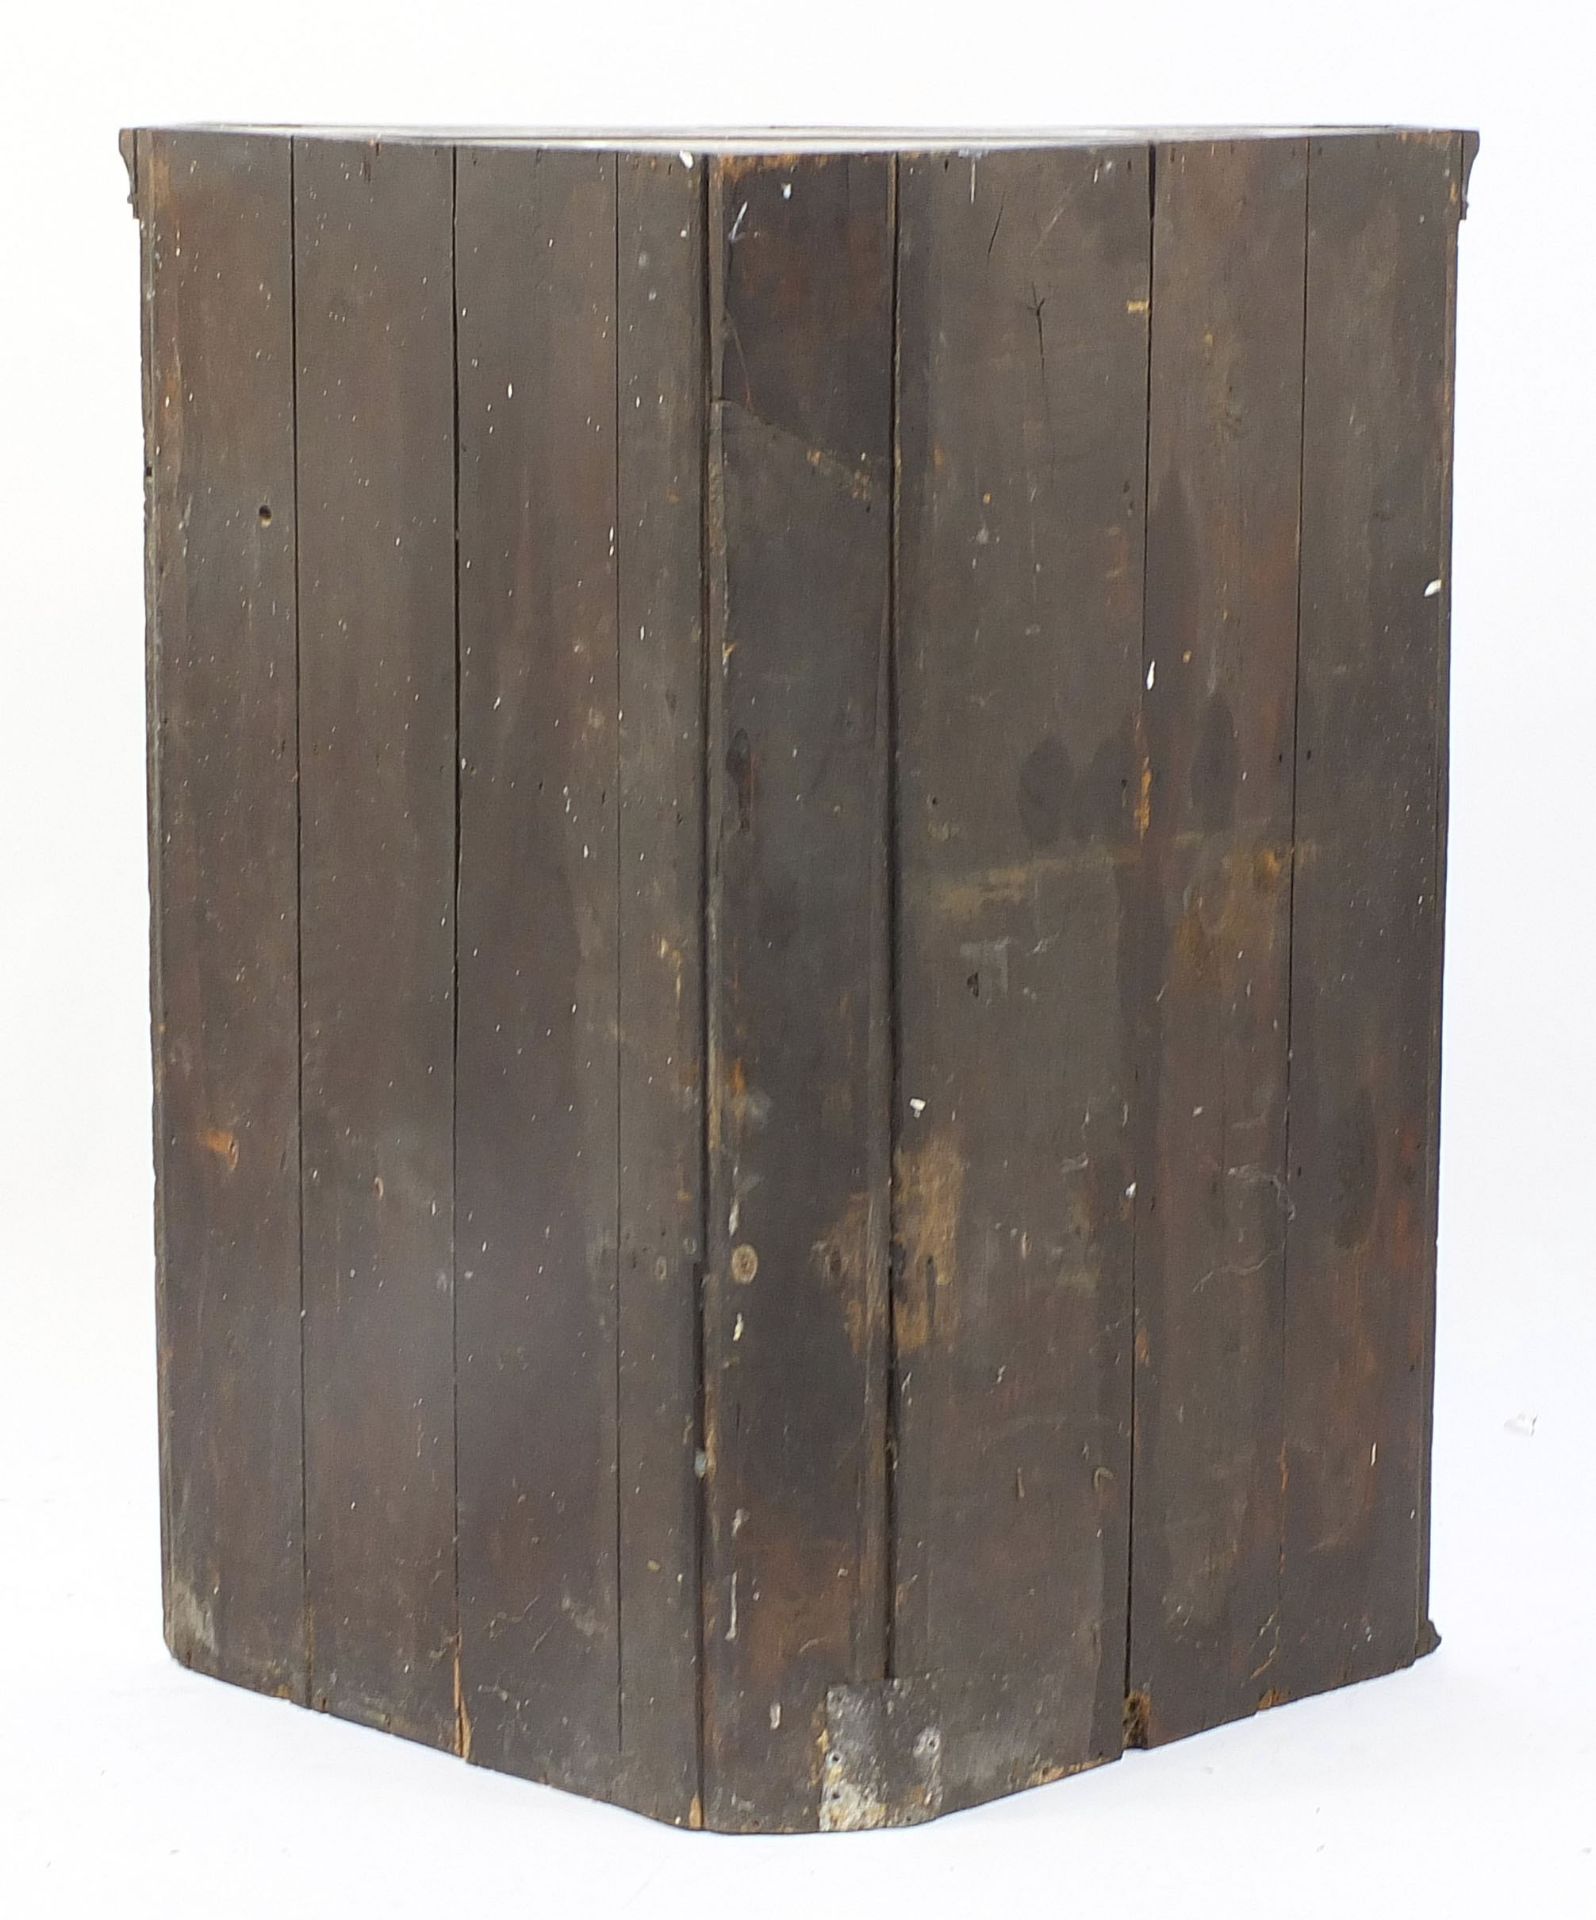 Large antique oak corner cupboard, 122cm H x 104cm W x 64cm D - Image 3 of 3